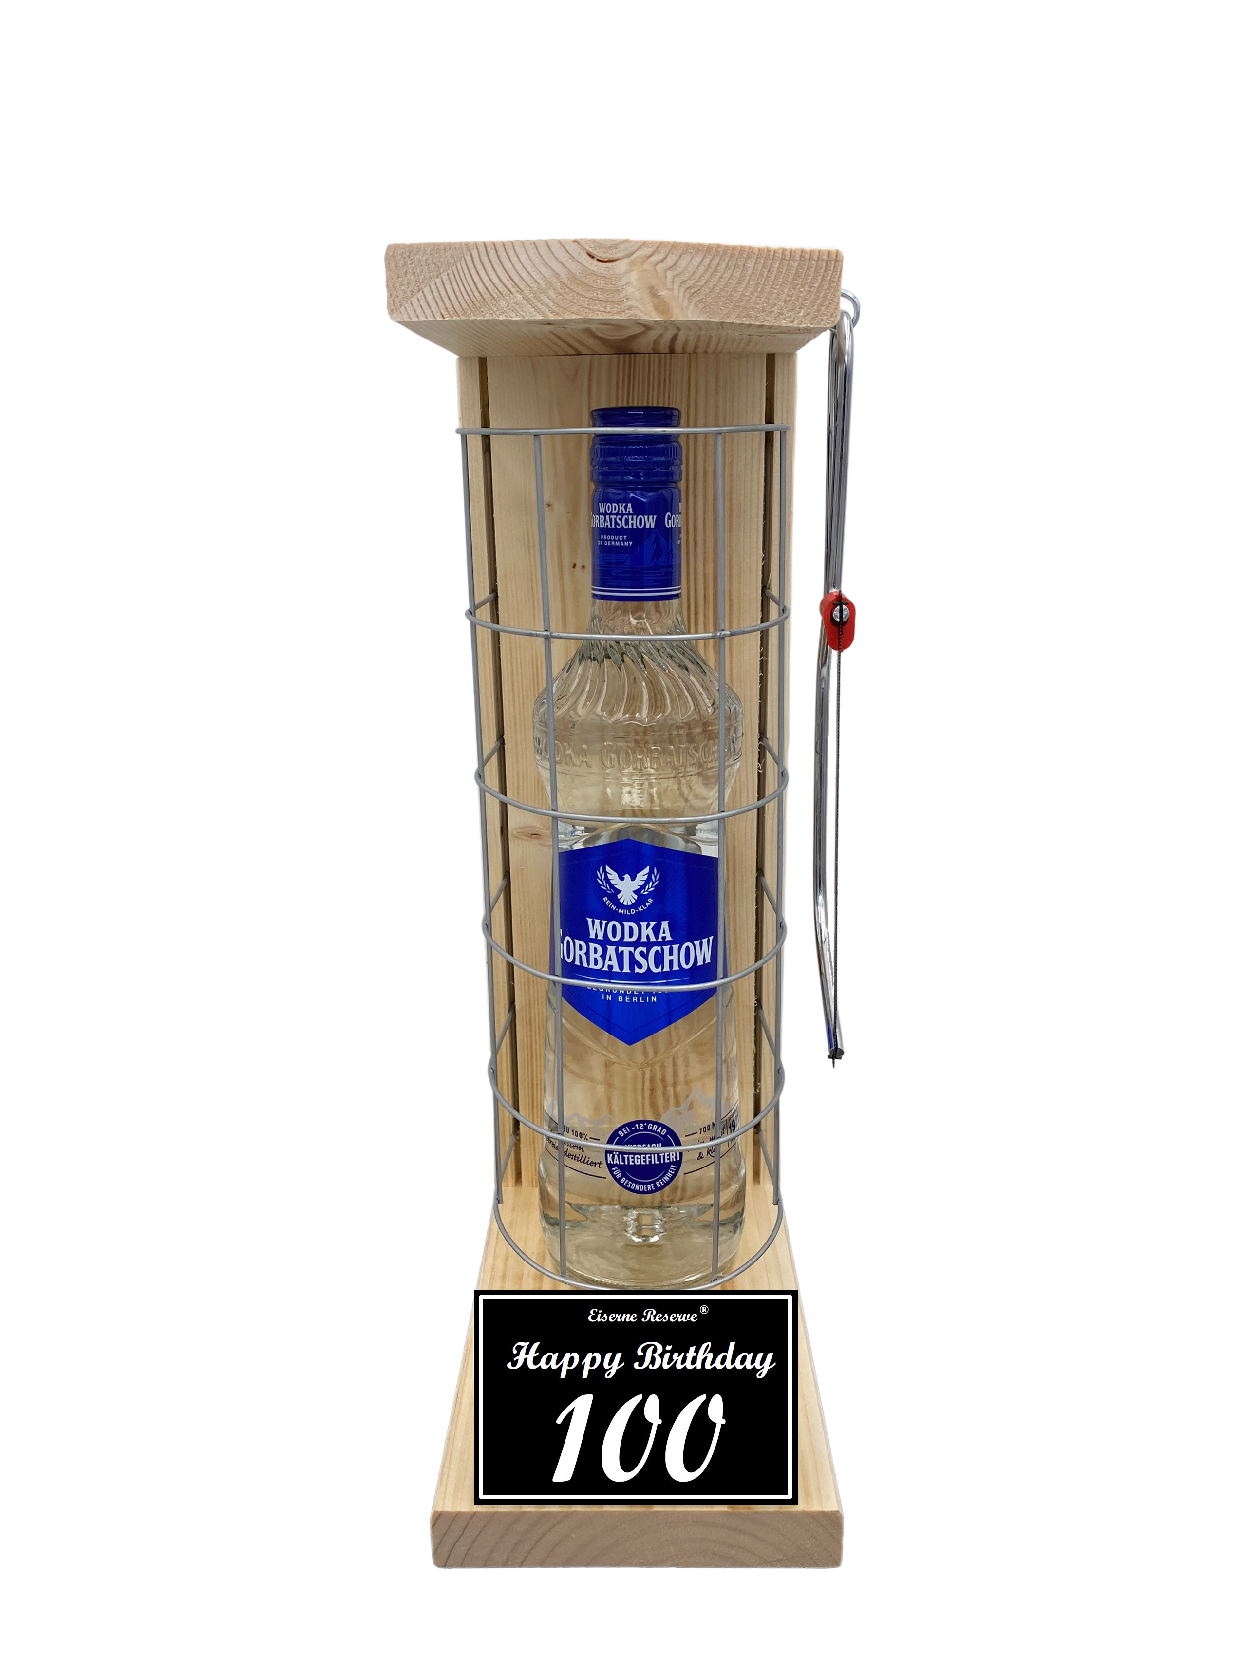 Wodka Geschenk zum 100 Geburtstag - Eiserne Reserve Gitterkäfig